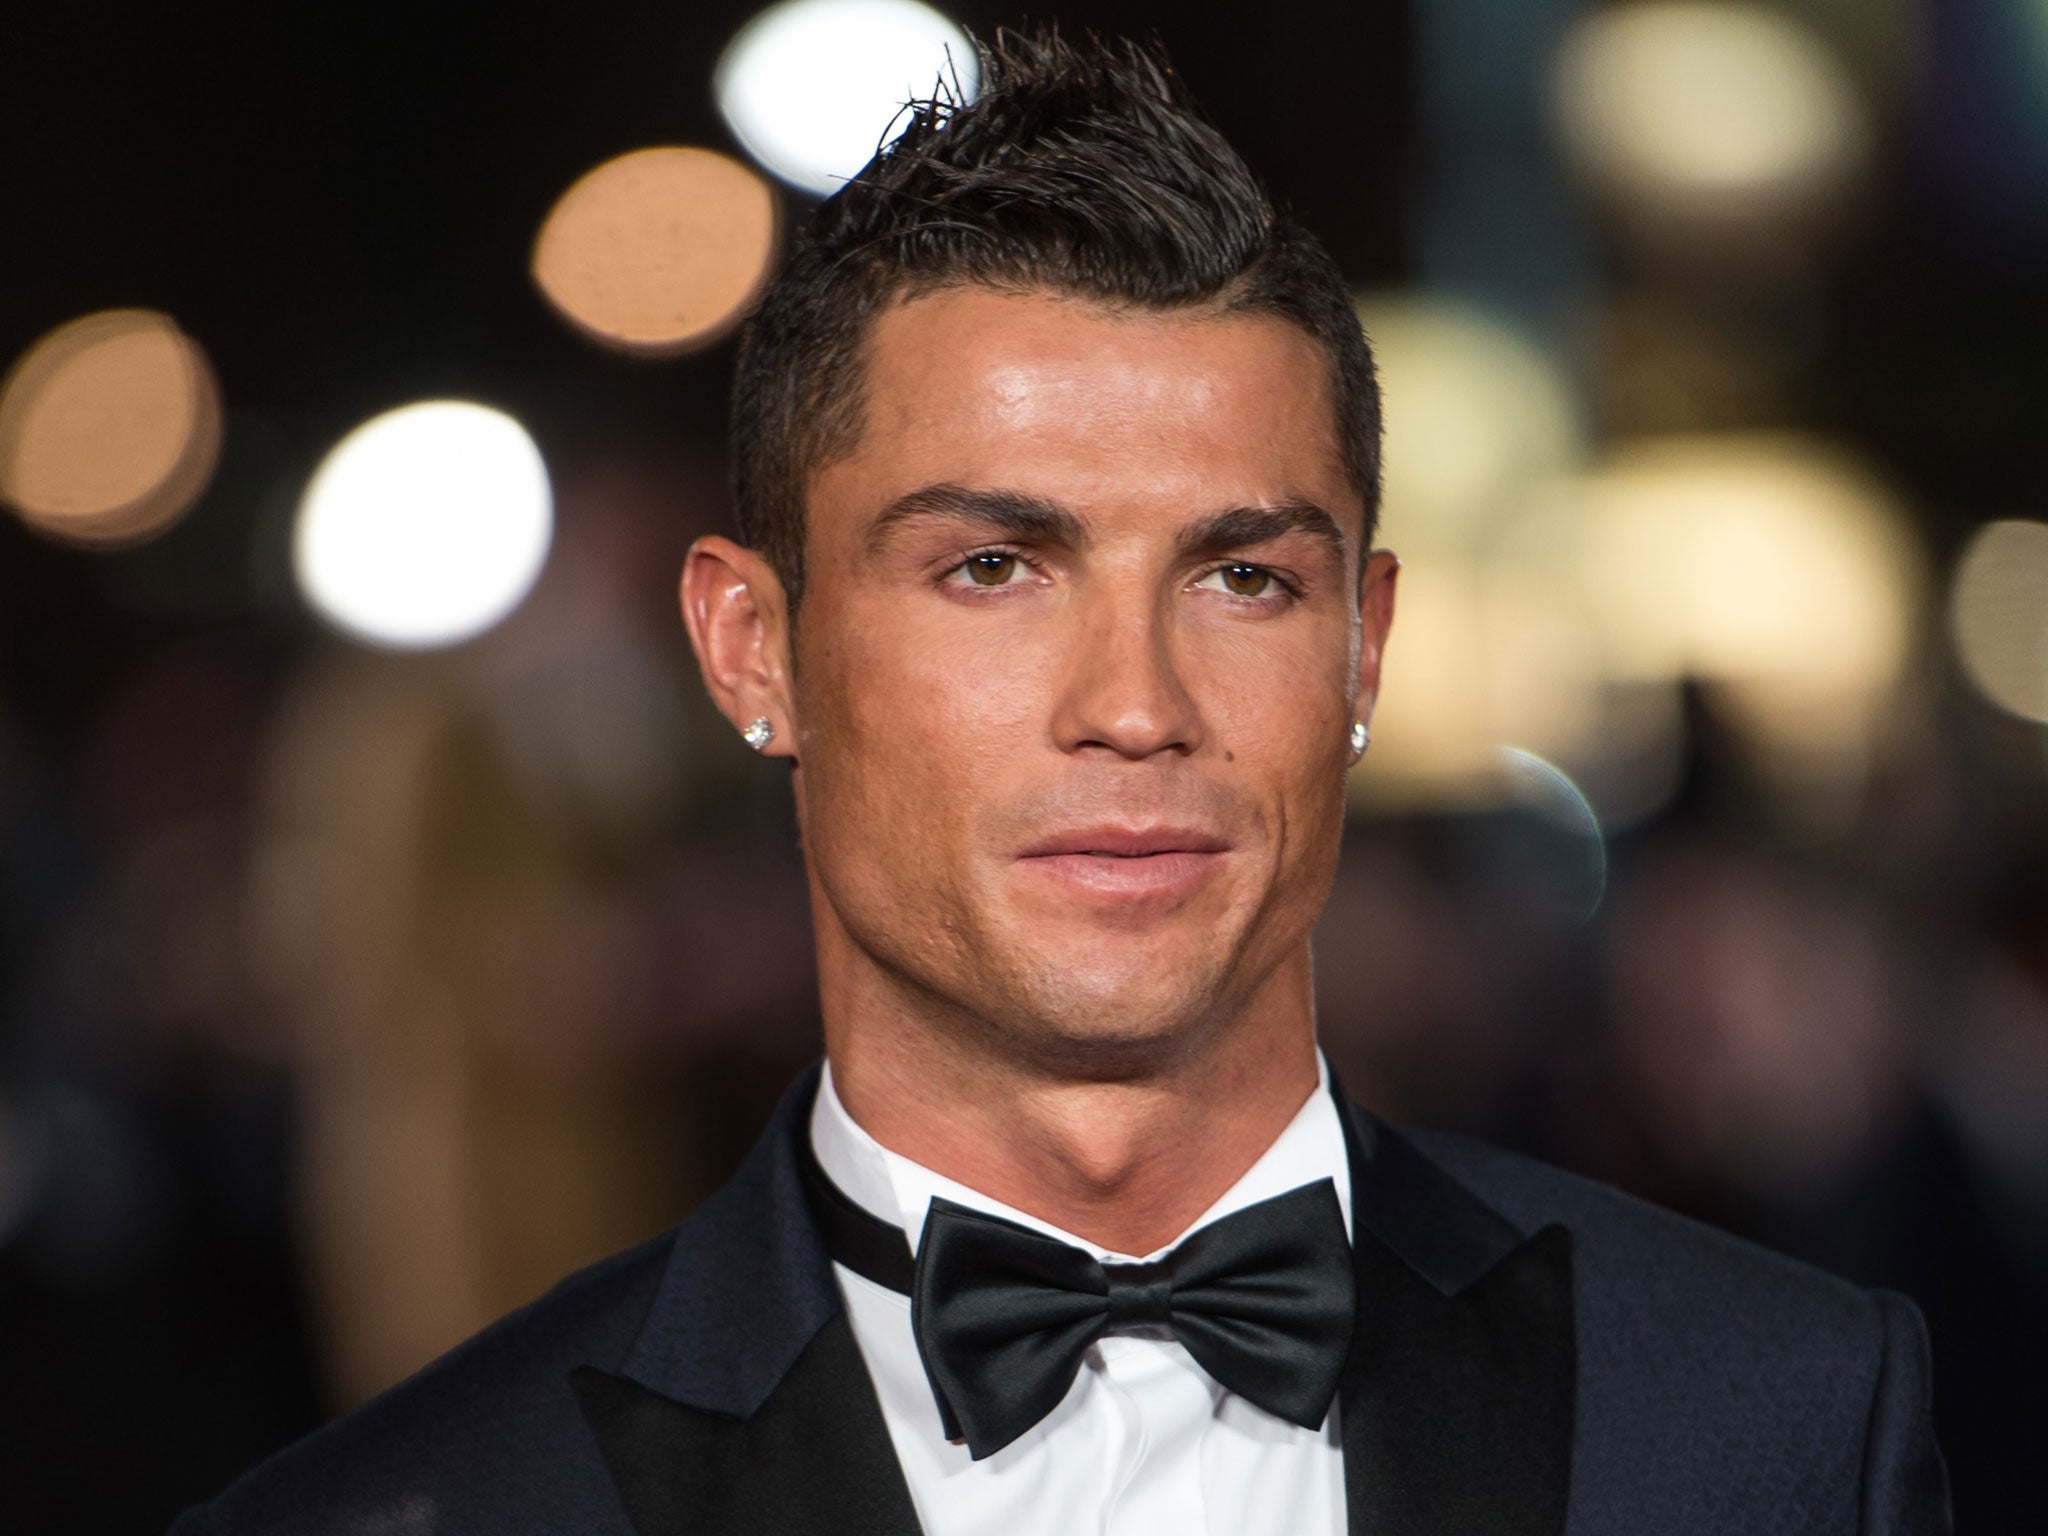 Cristiano Ronaldo at the premiere of his new film 'Ronaldo'